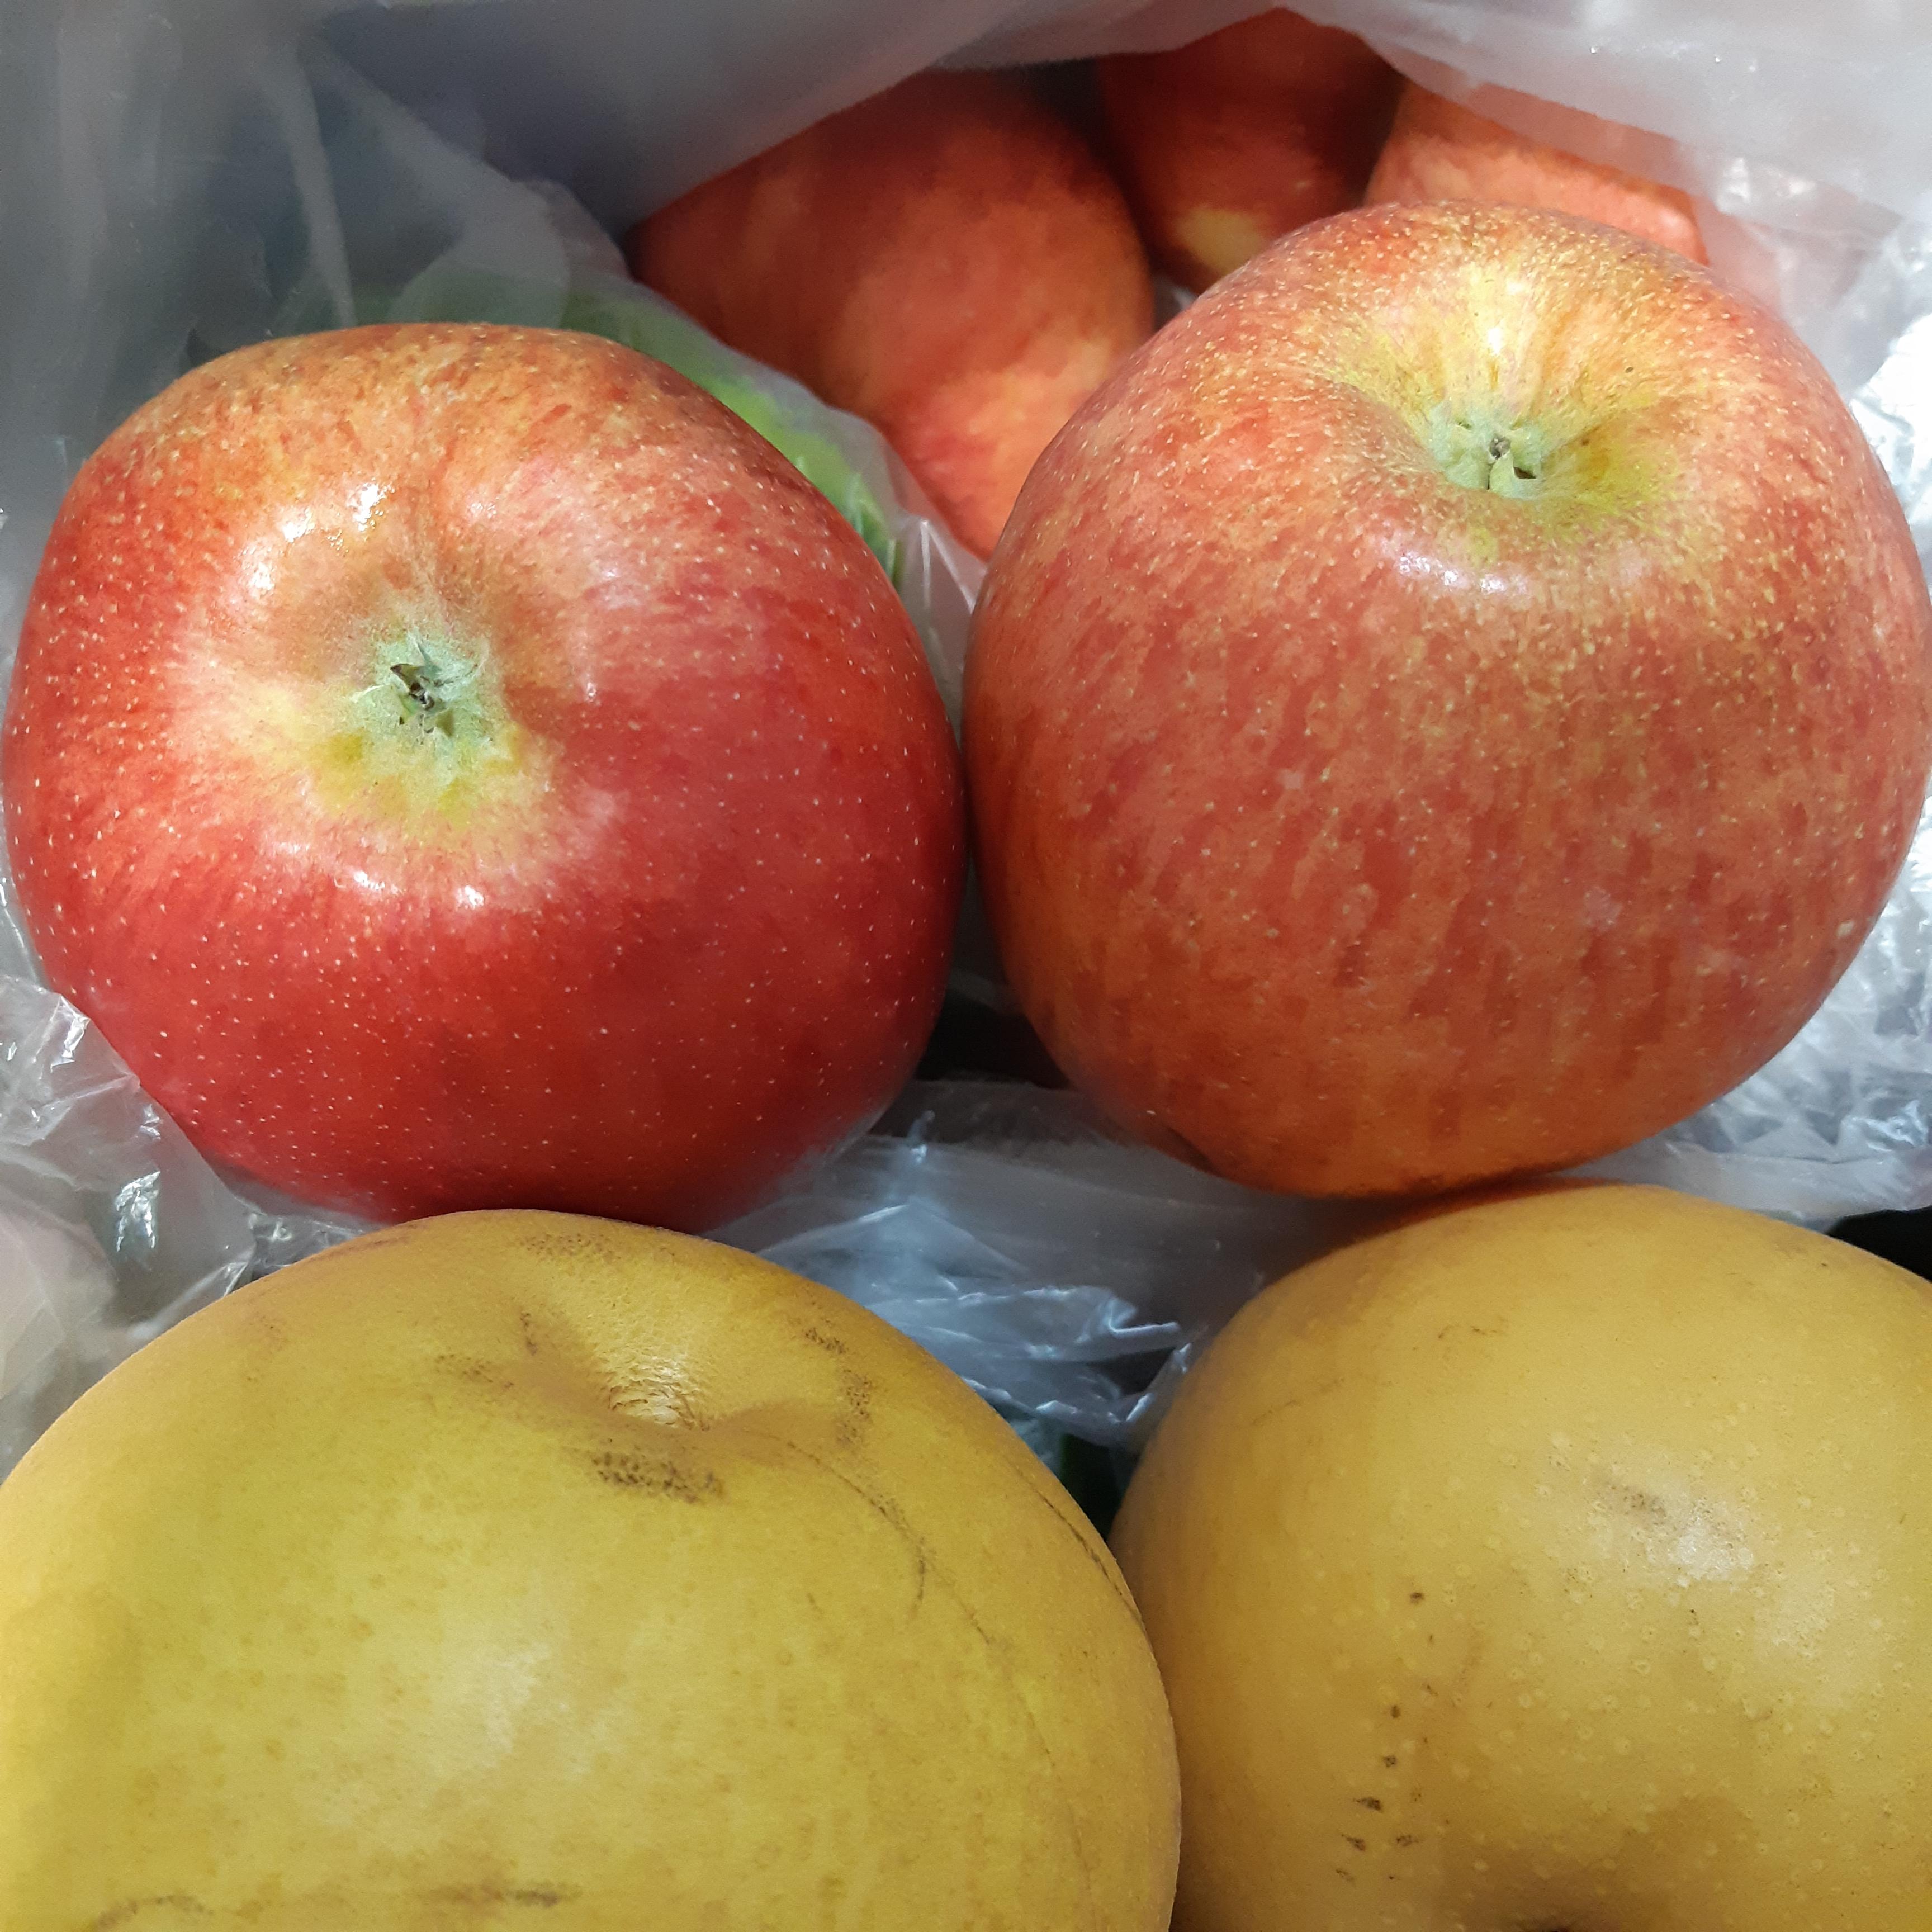 냉장고에 들어있는 사과(홍로)와 배